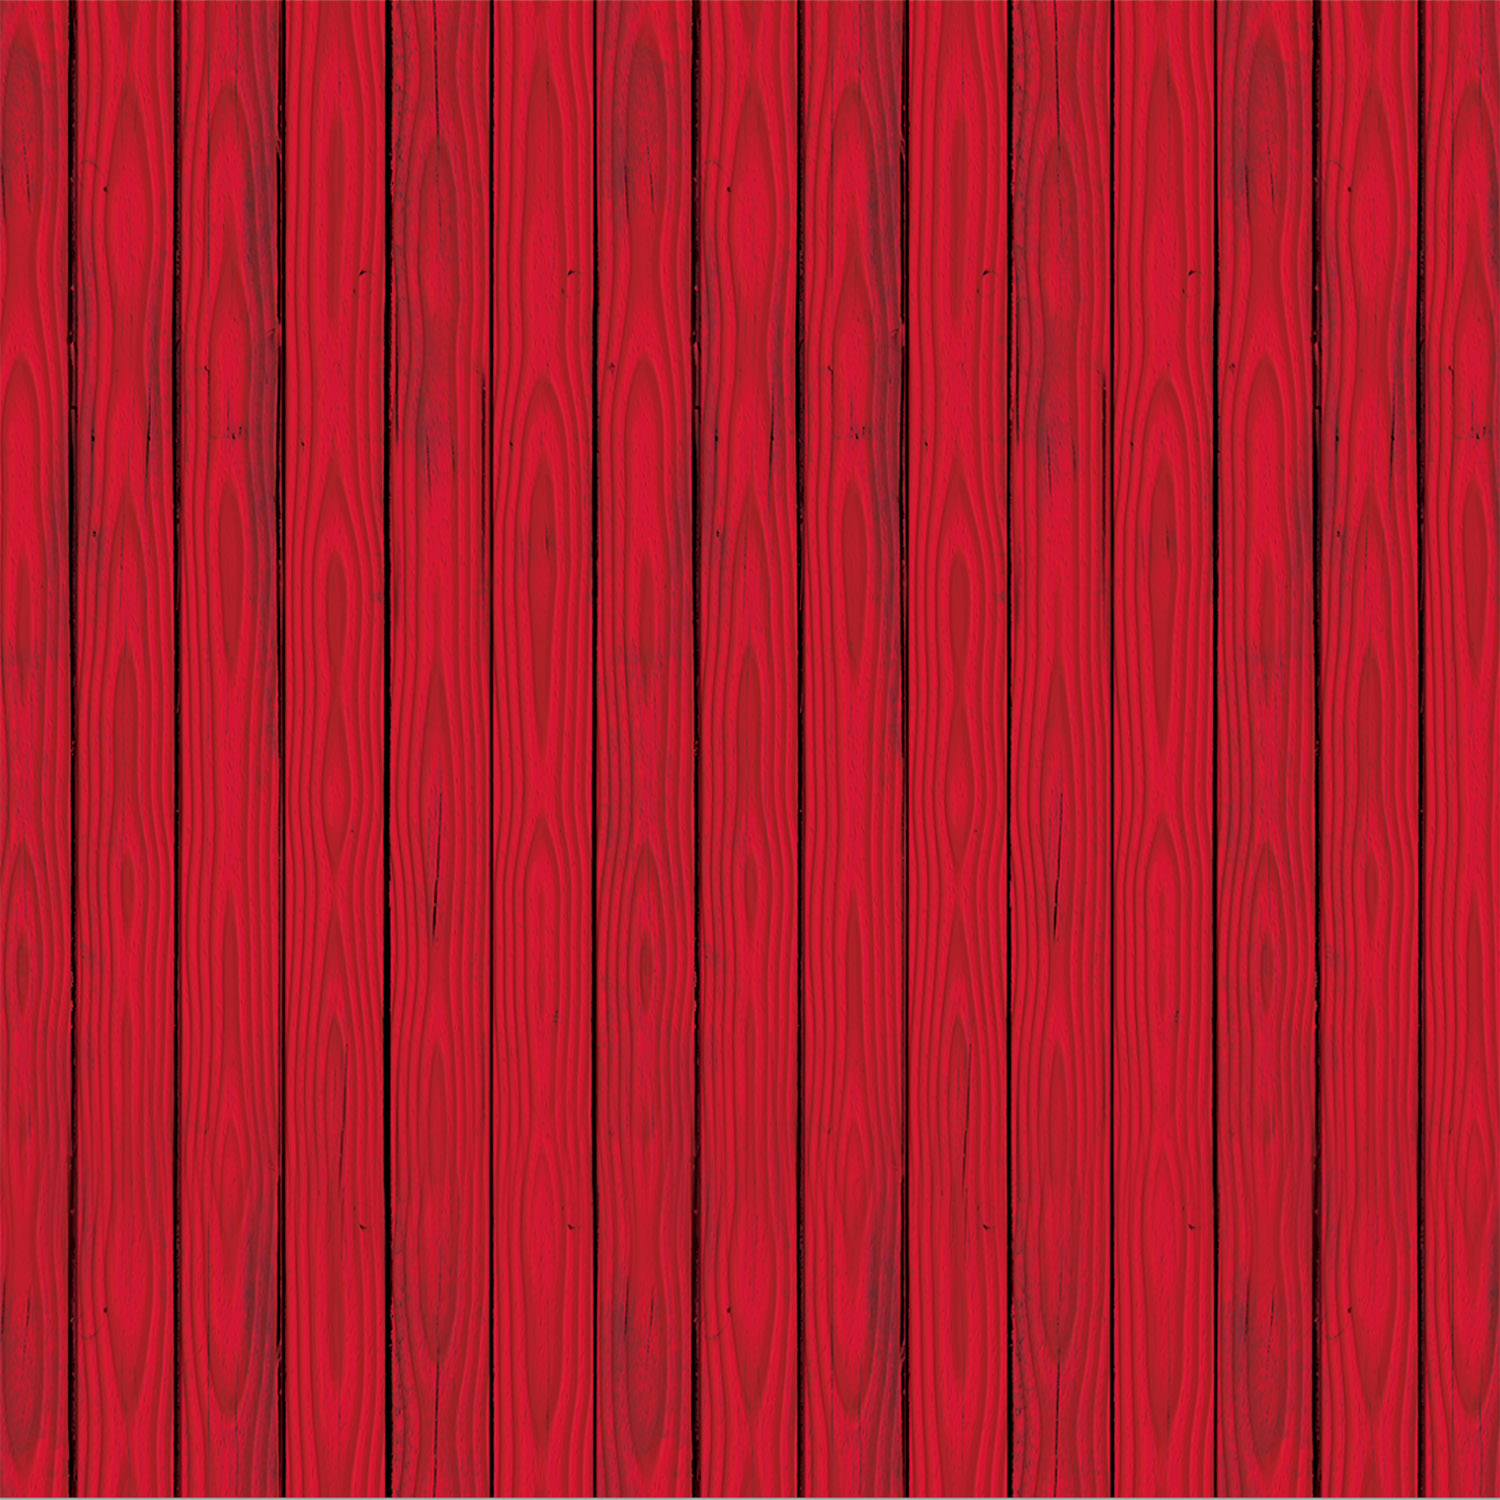 Nền gỗ đỏ tường nhà kho: Nếu bạn đang tìm kiếm một không gian cho trang trí ảnh hoặc quảng cáo sản phẩm, thì nền gỗ đỏ tường nhà kho là sự lựa chọn hàng đầu. Với màu đỏ tươi sáng và kết cấu tự nhiên của gỗ, bạn sẽ có một bức ảnh ấn tượng và đặc biệt cho bất kỳ dự án nào.